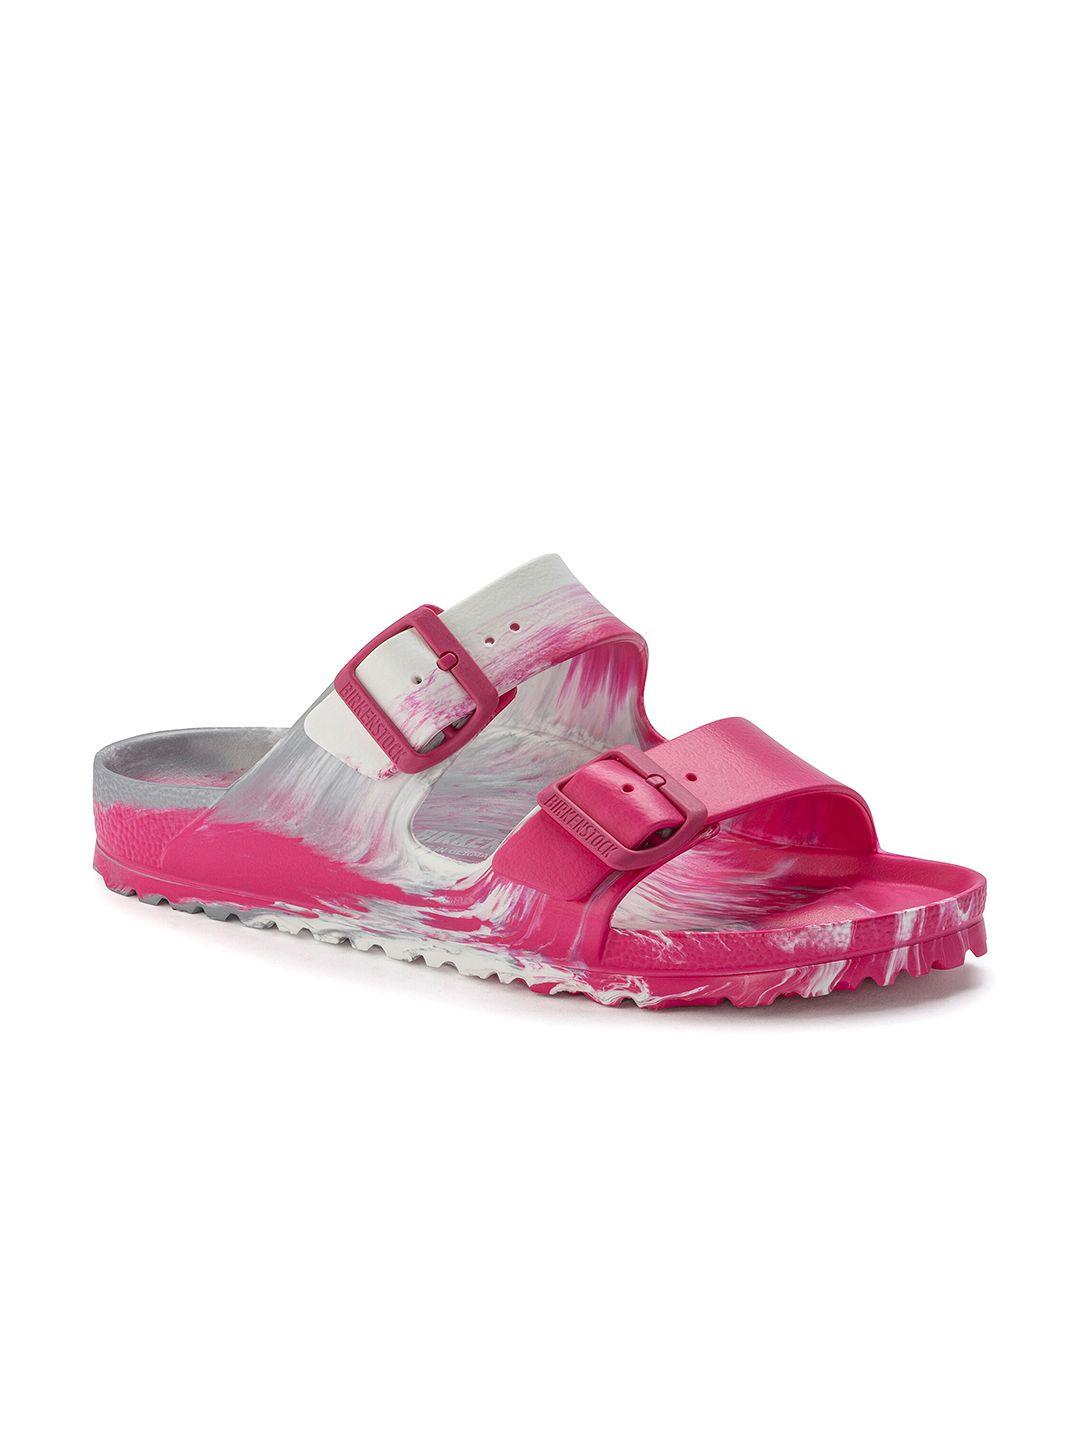 birkenstock unisex pink arizona sandals